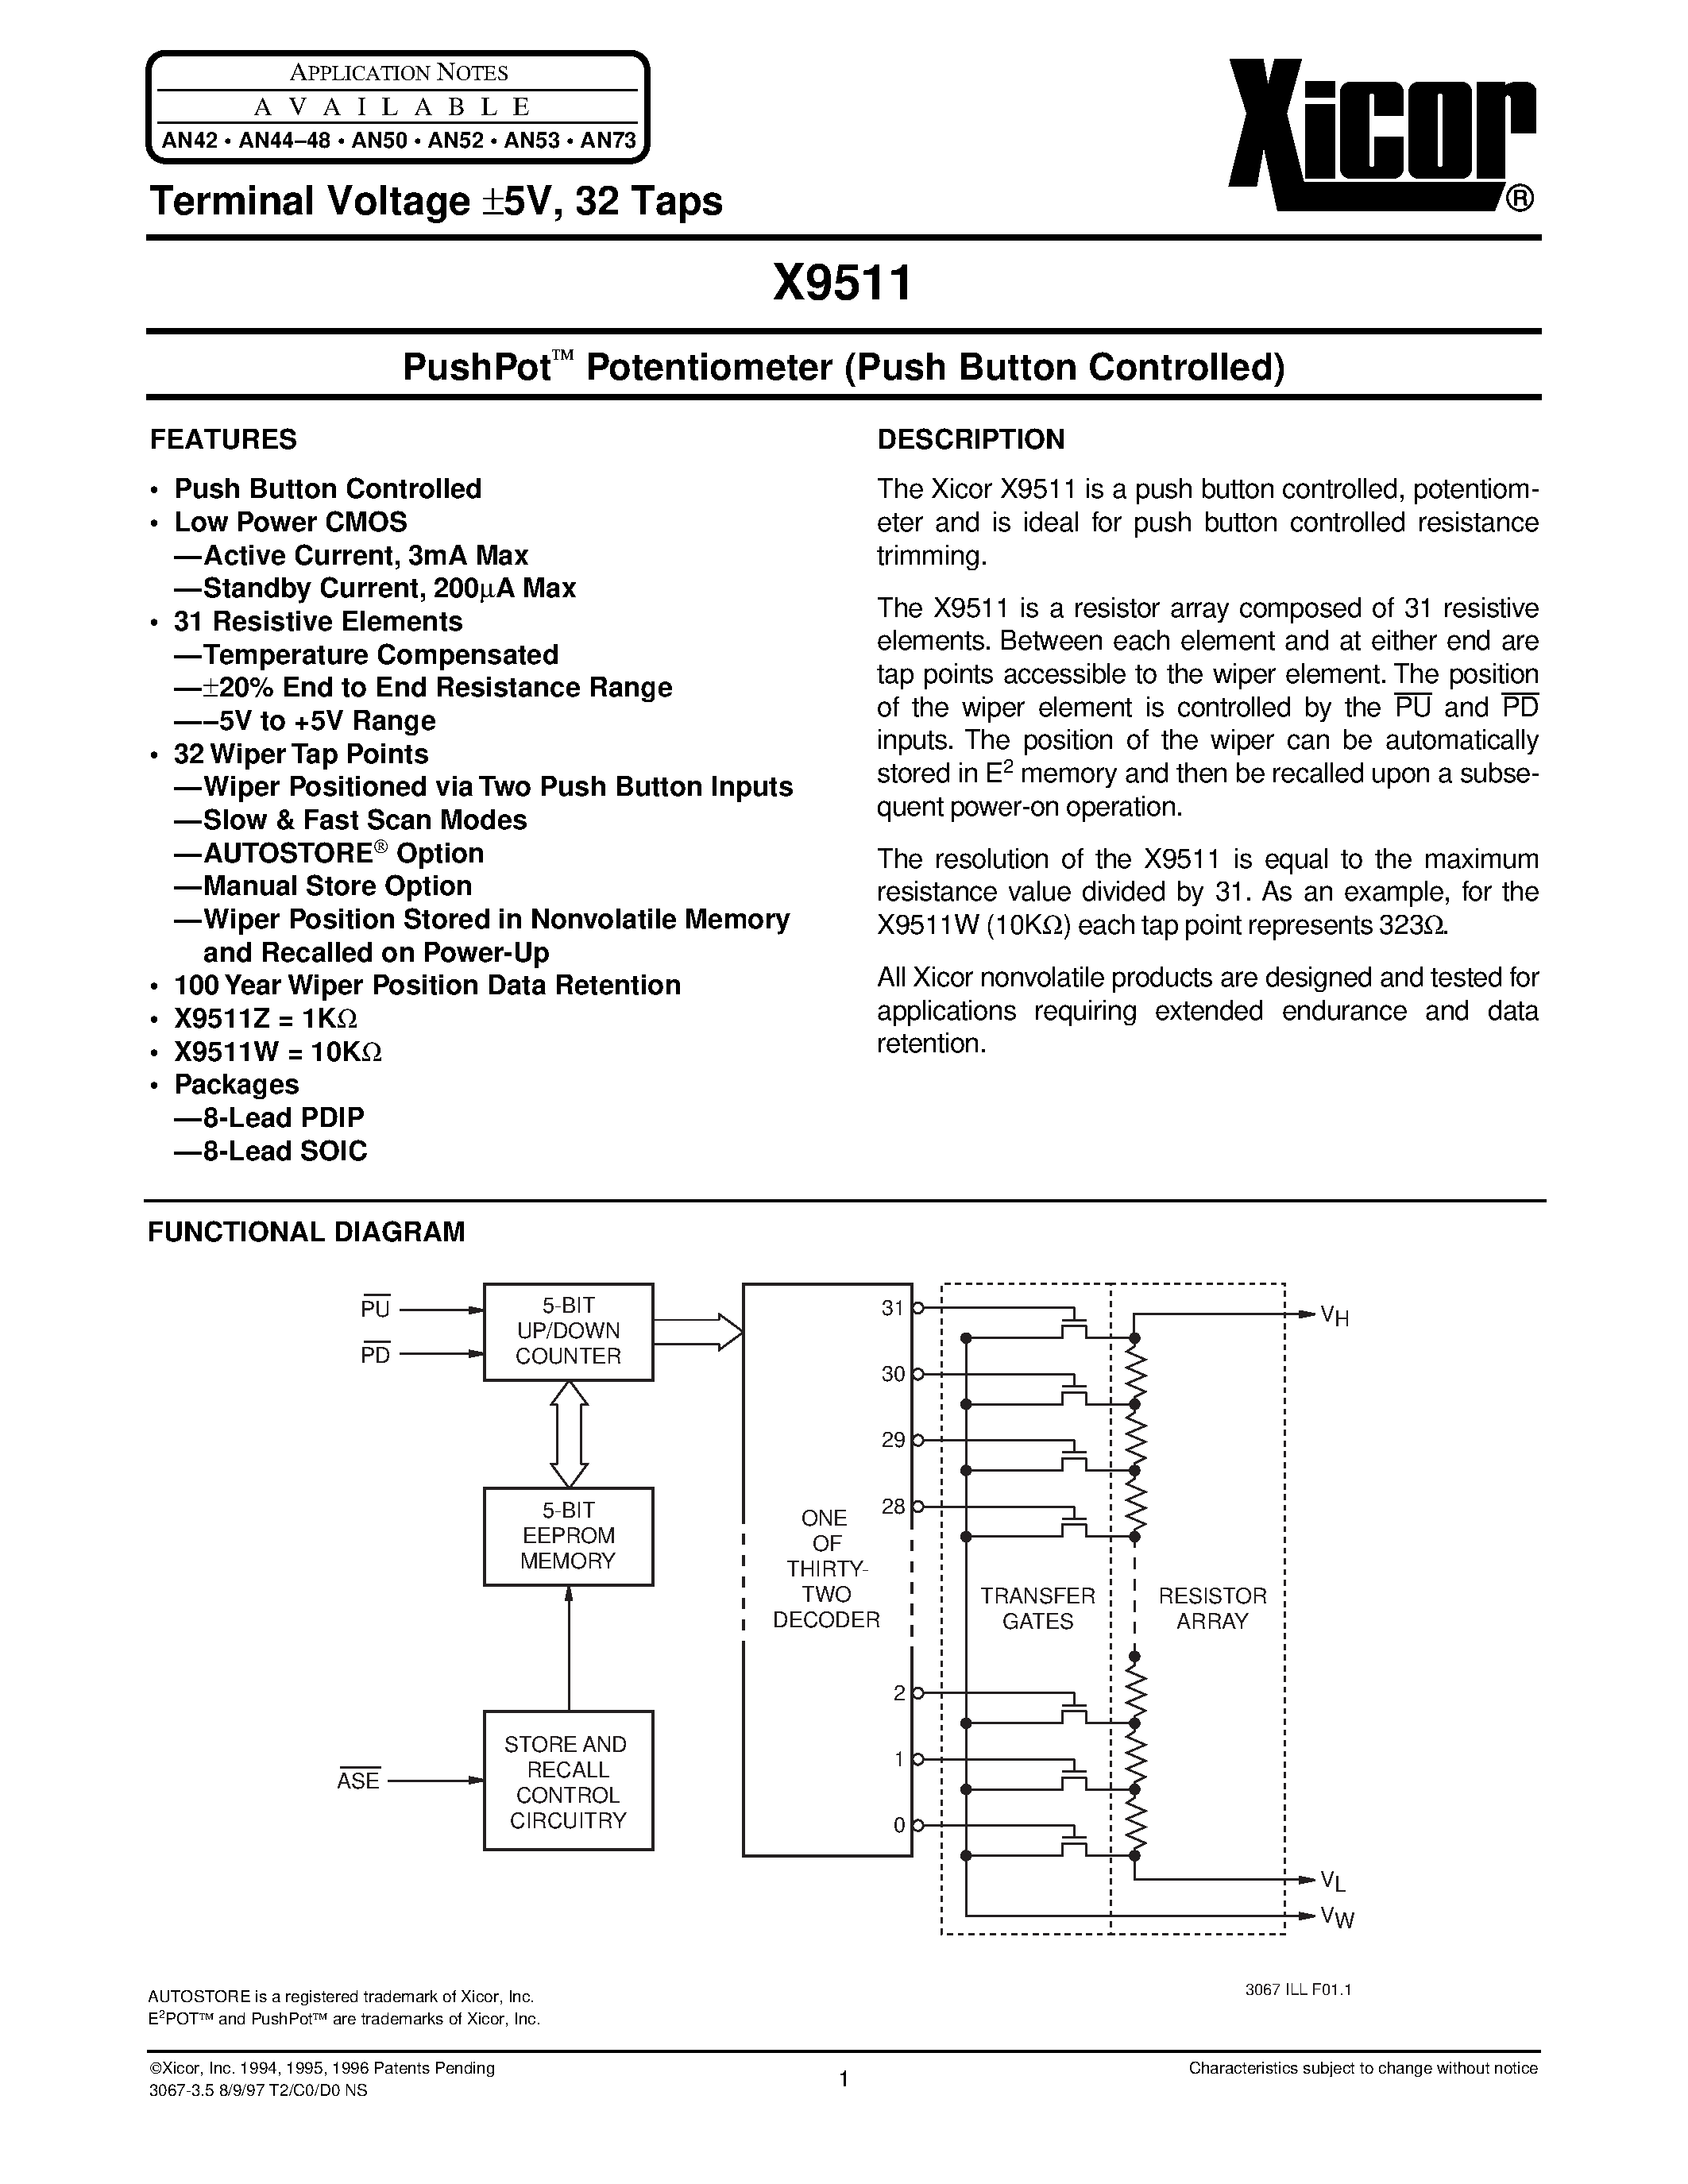 Даташит X9511WSM - PushPot O Potentiometer (Push Button Controlled) страница 1